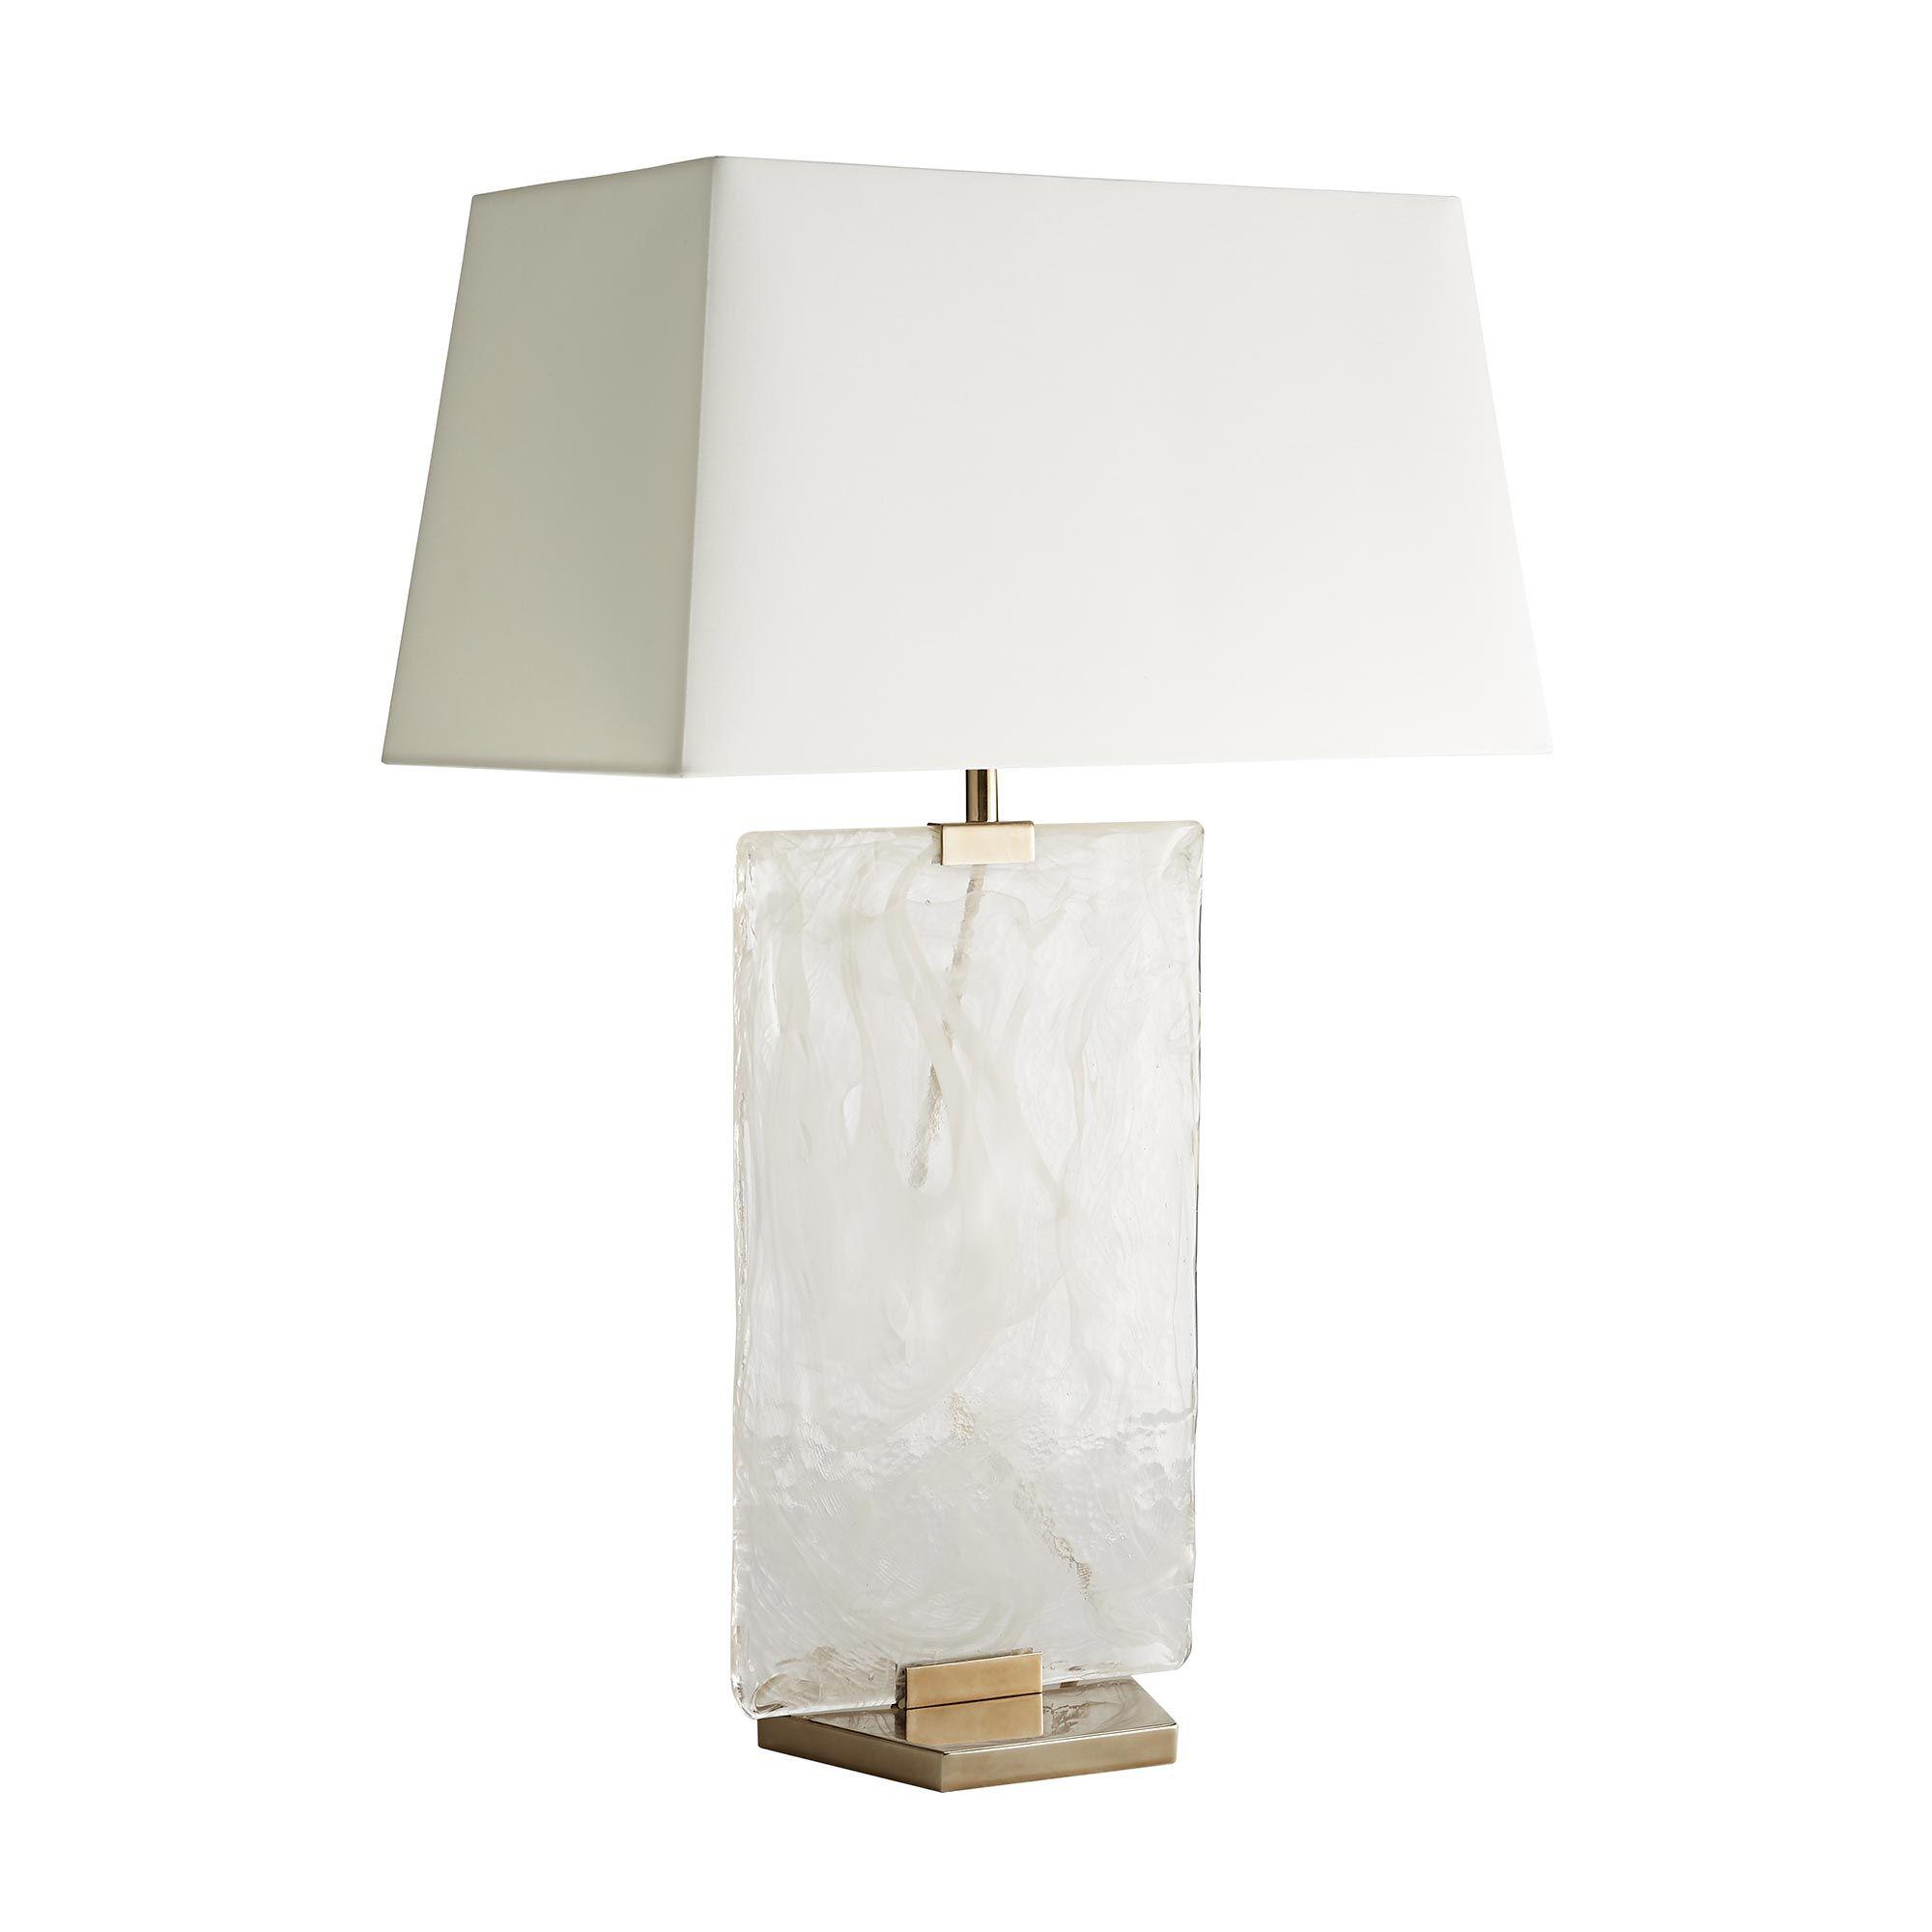 Купить Настольная лампа Maddox Lamp в интернет-магазине roooms.ru